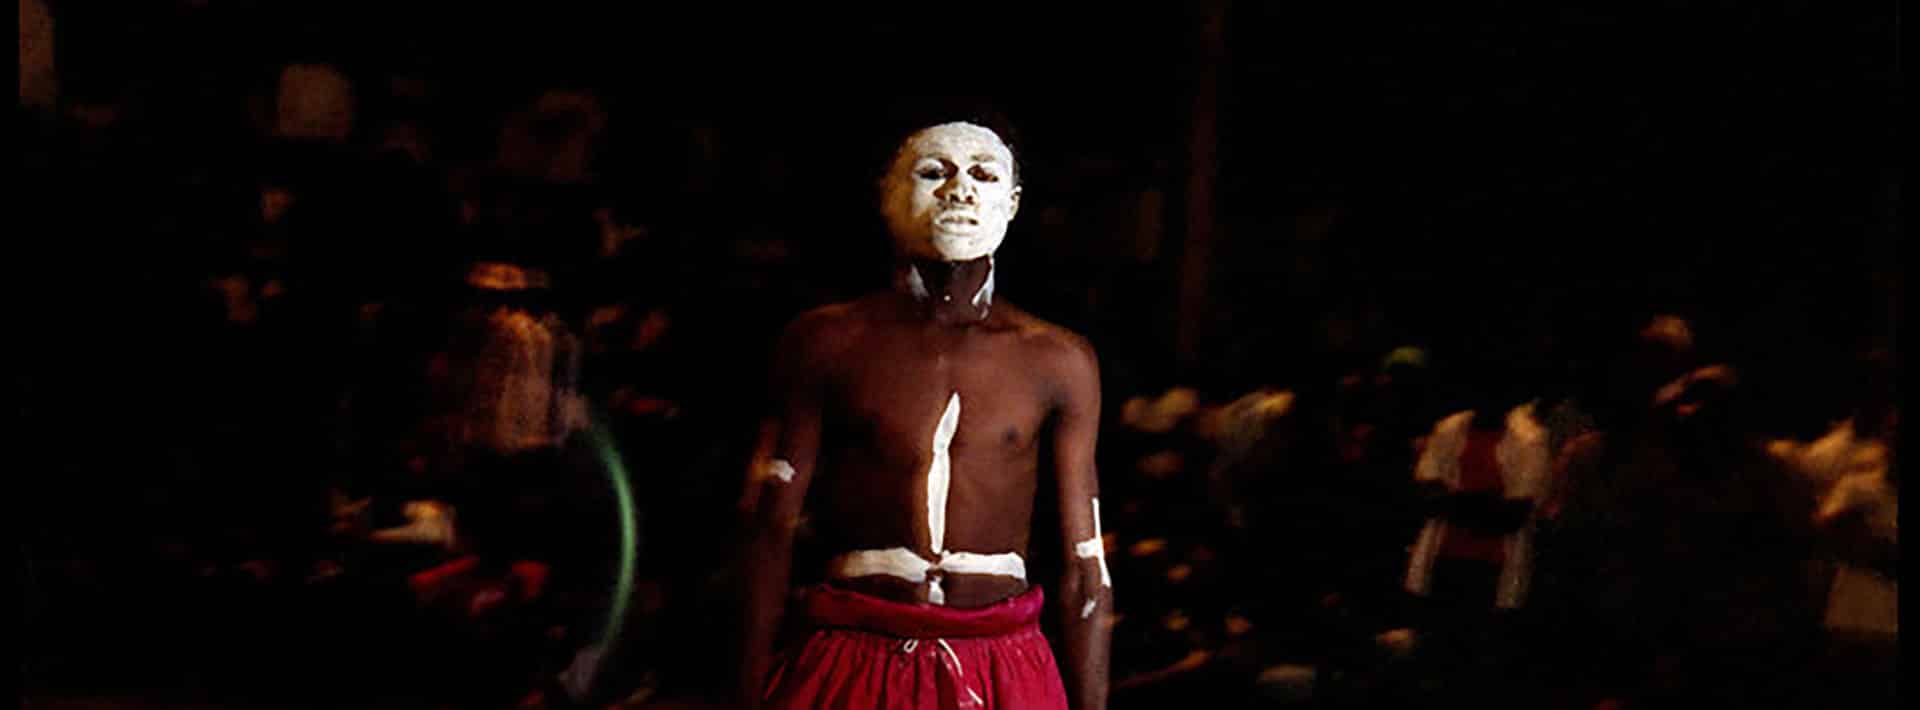 Bénédicte Kurzen, Voodoo Wrestling in Congo